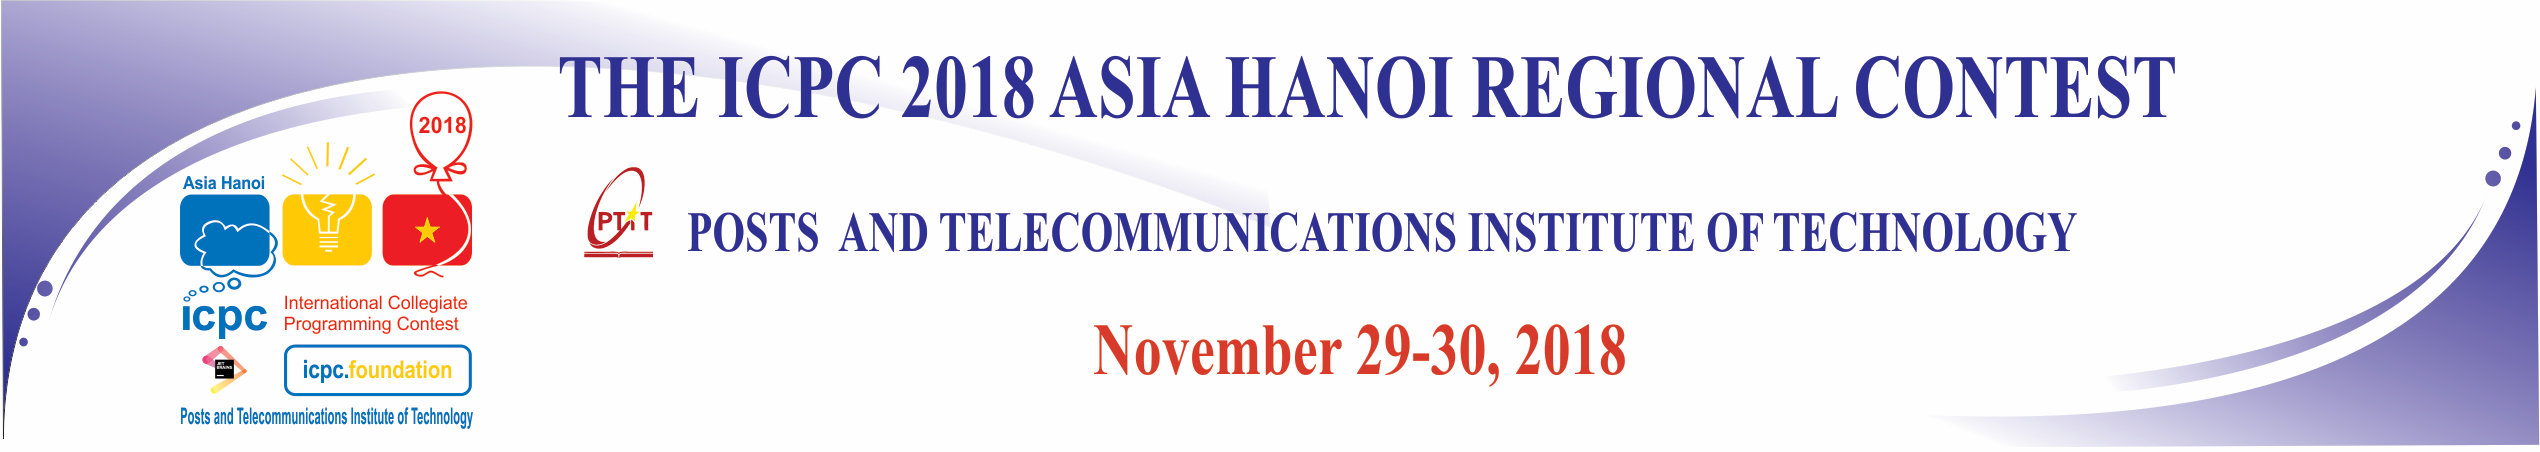 2018 ICPC Asia Hanoi Regional Contest